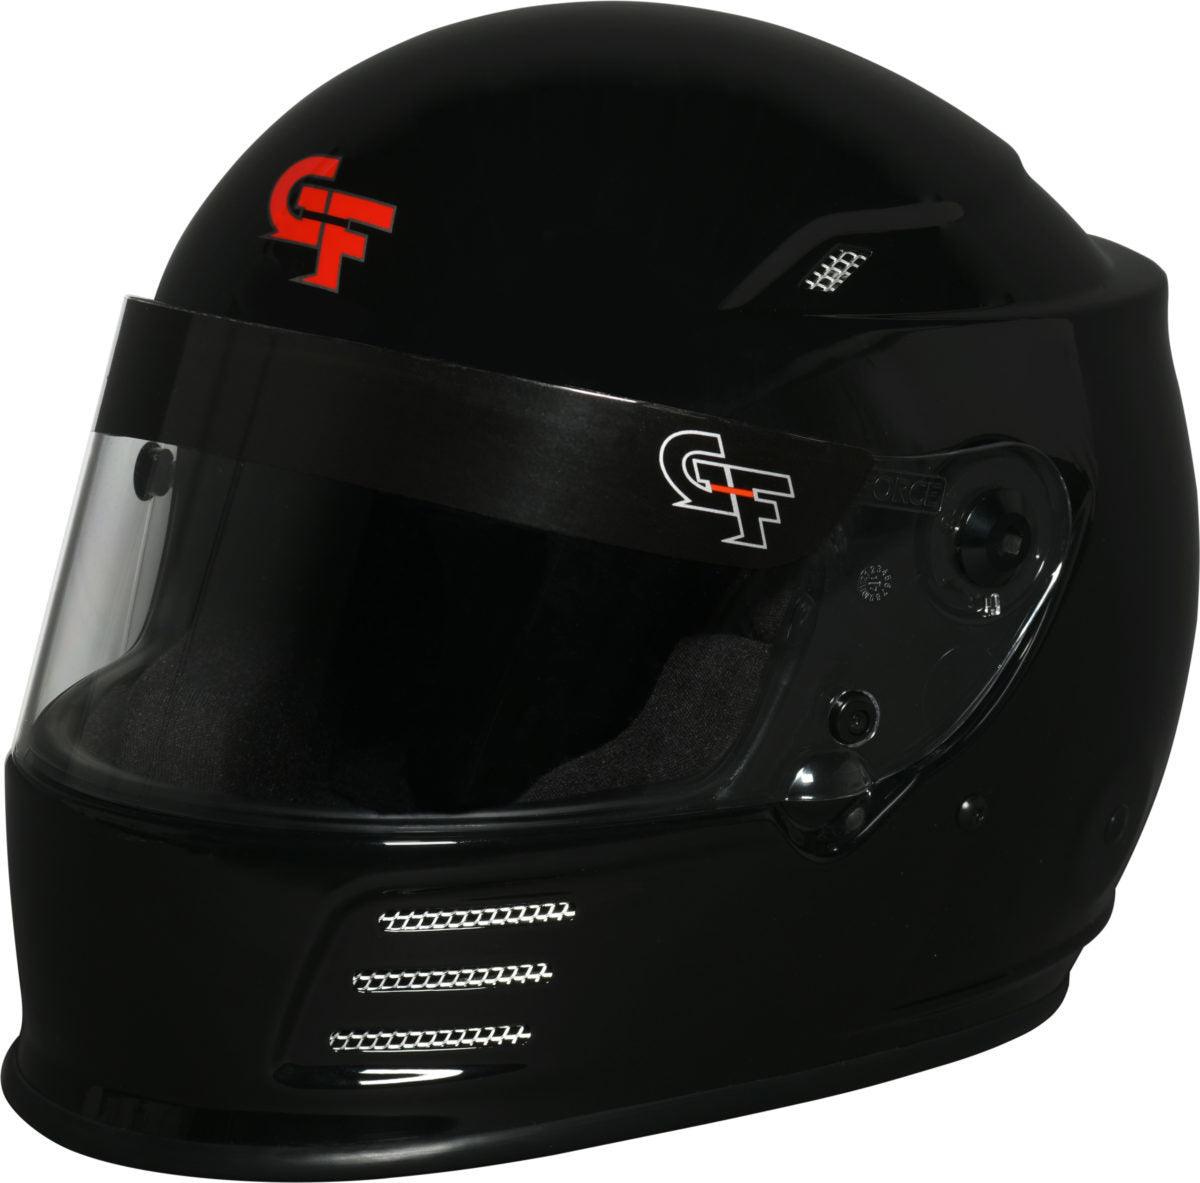 Helmet Revo X-Large Black SA2020 - Burlile Performance Products